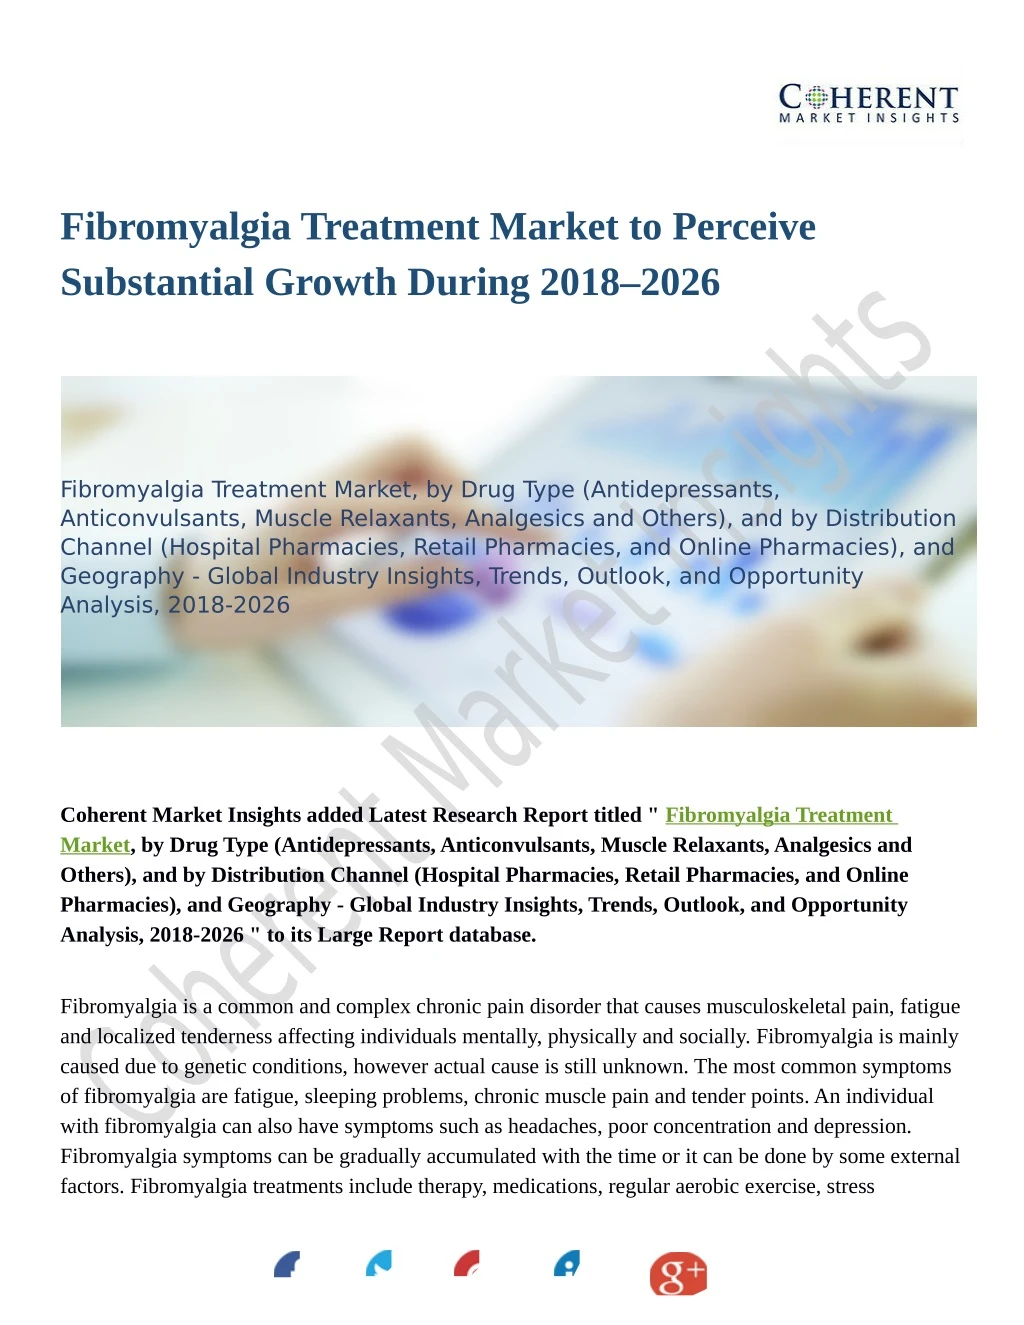 fibromyalgia treatment market to perceive